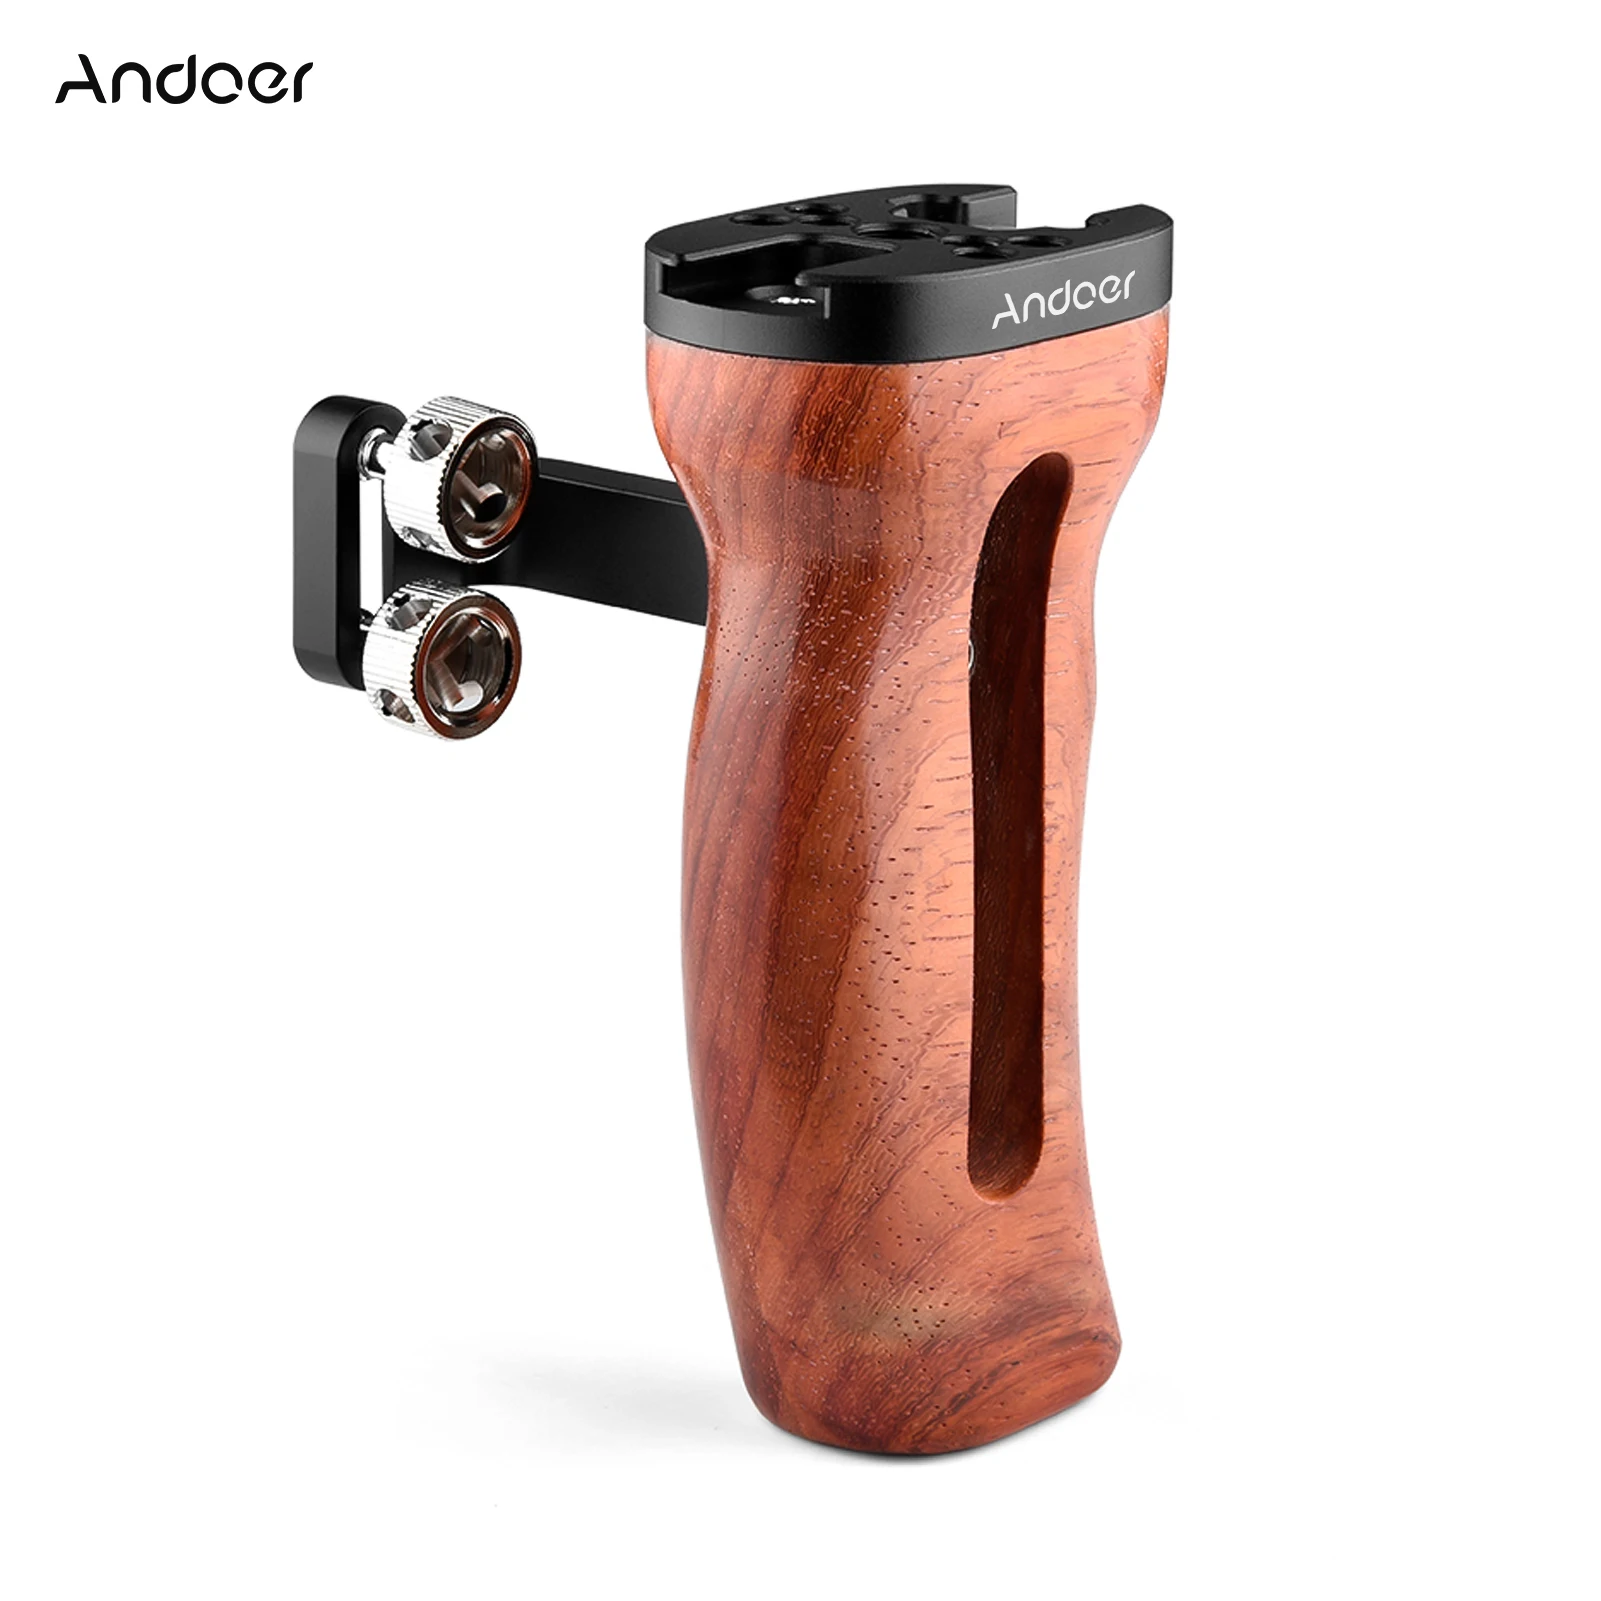 

Универсальная деревянная ручка Andoer для камеры левая/правая рукоятка с креплением для холодного башмака отверстия для винтов 1/4 дюйма и 3/8 дю...